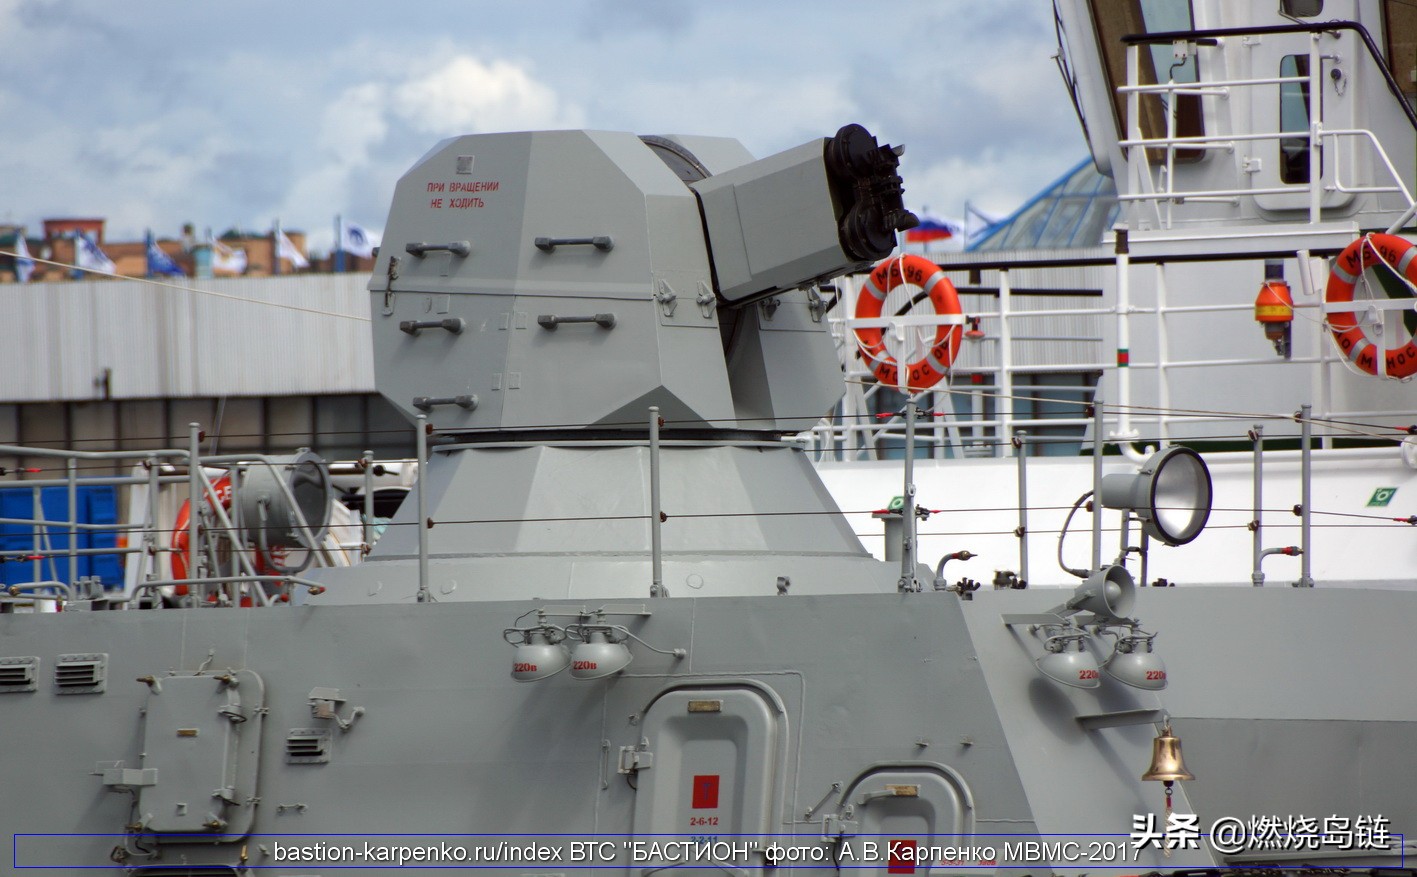 小鬼当家,俄罗斯的微型舰队——21631型"暴徒m"小型导弹舰